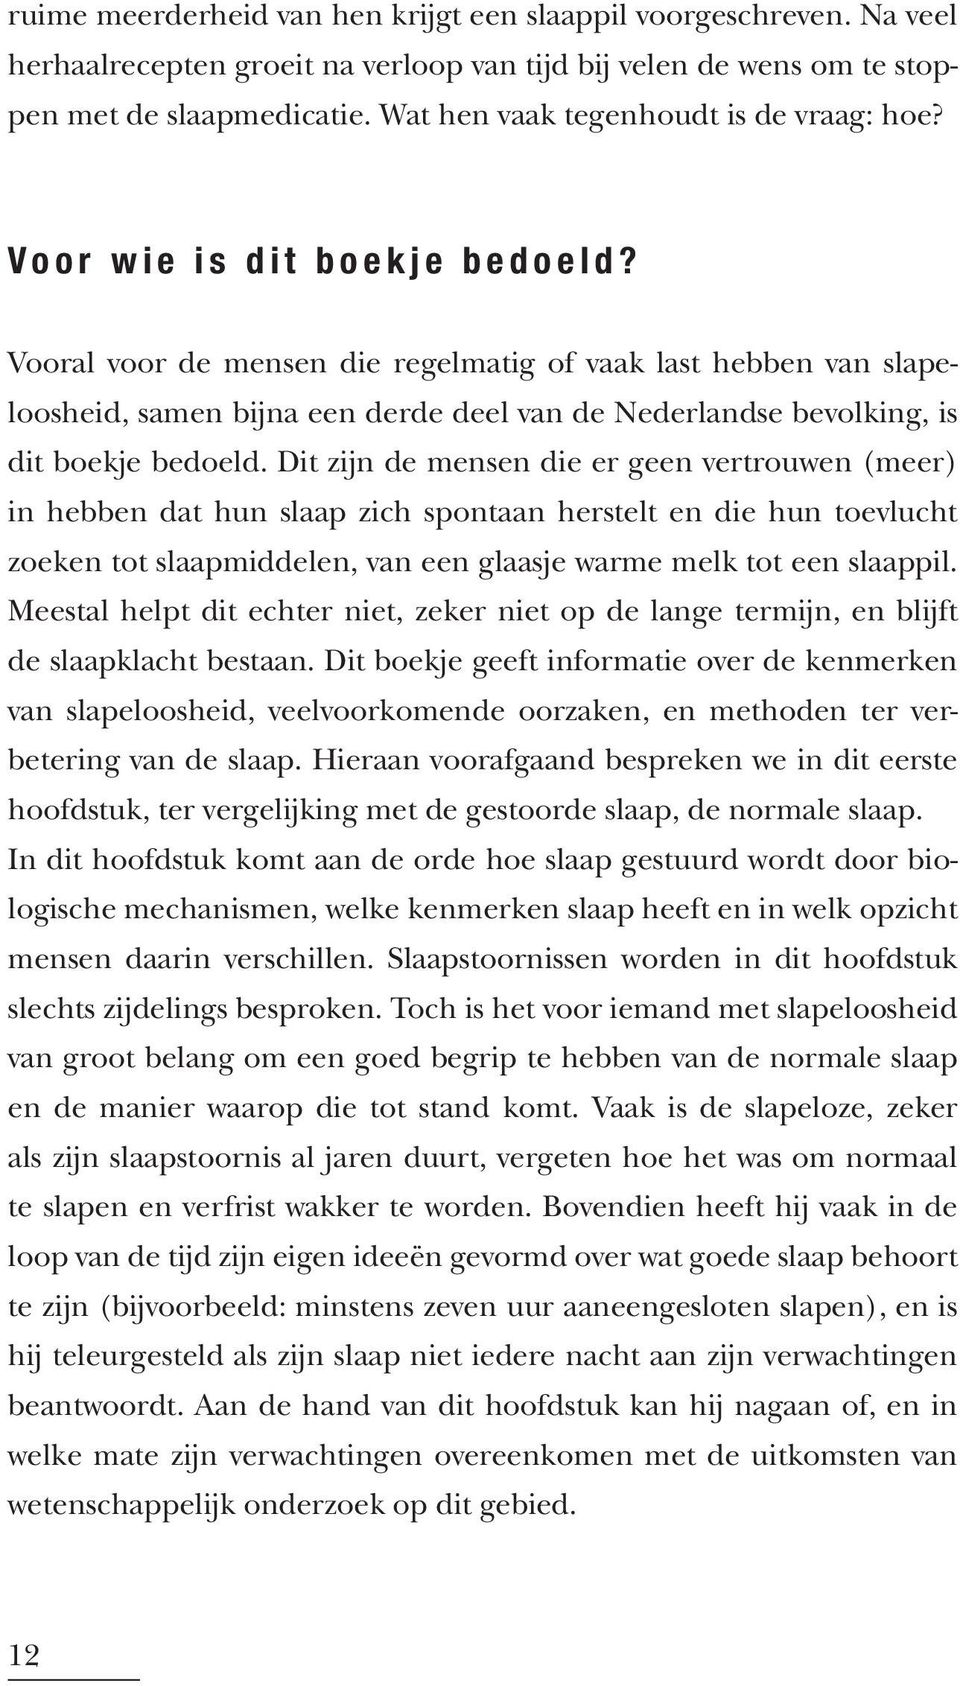 Vooral voor de mensen die regelmatig of vaak last hebben van slapeloosheid, samen bijna een derde deel van de Nederlandse bevolking, is dit boekje bedoeld.